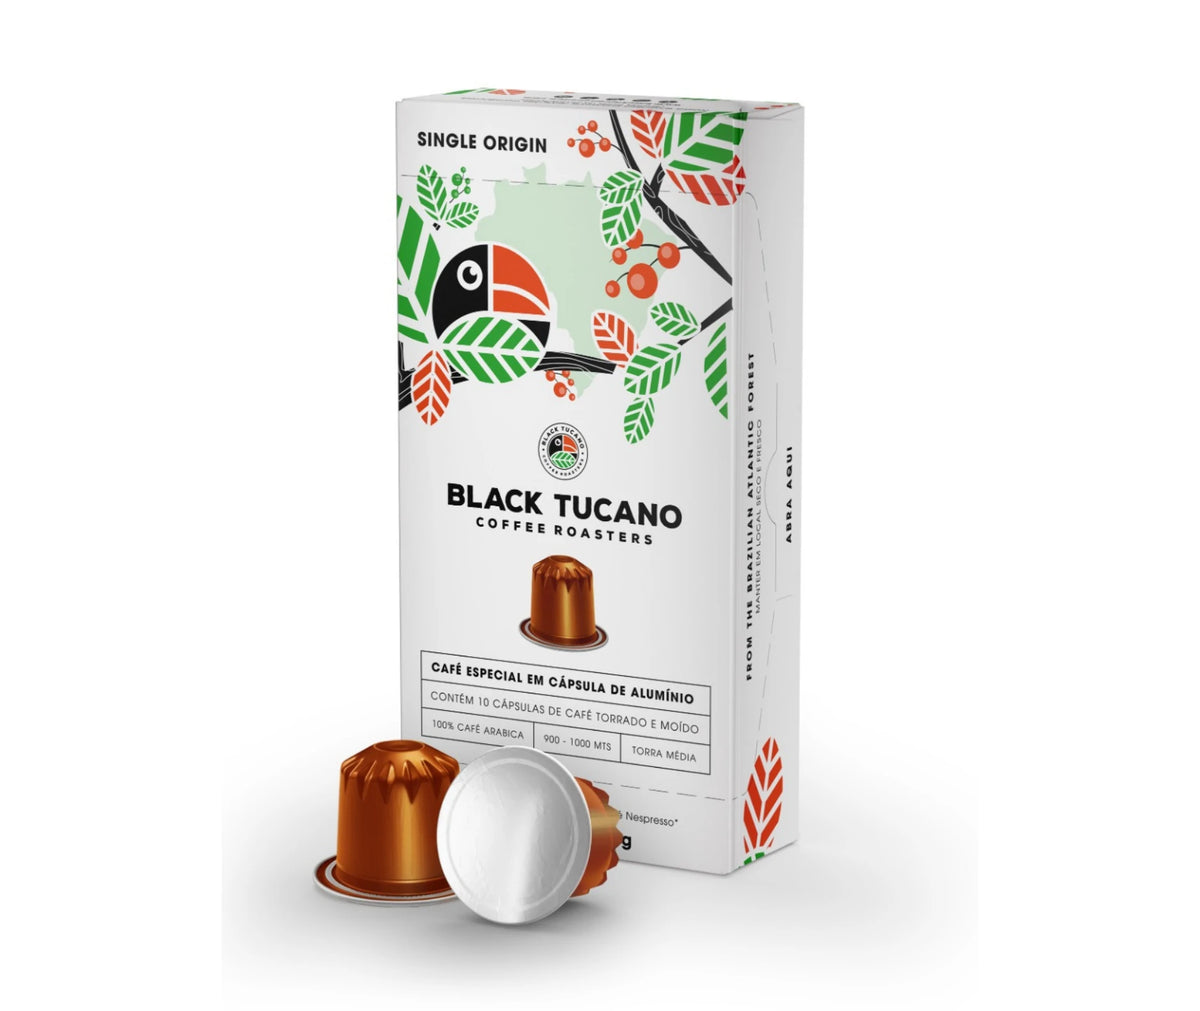 Tucano – 30% Arabica – 70% Conillon - Bhousecoffee